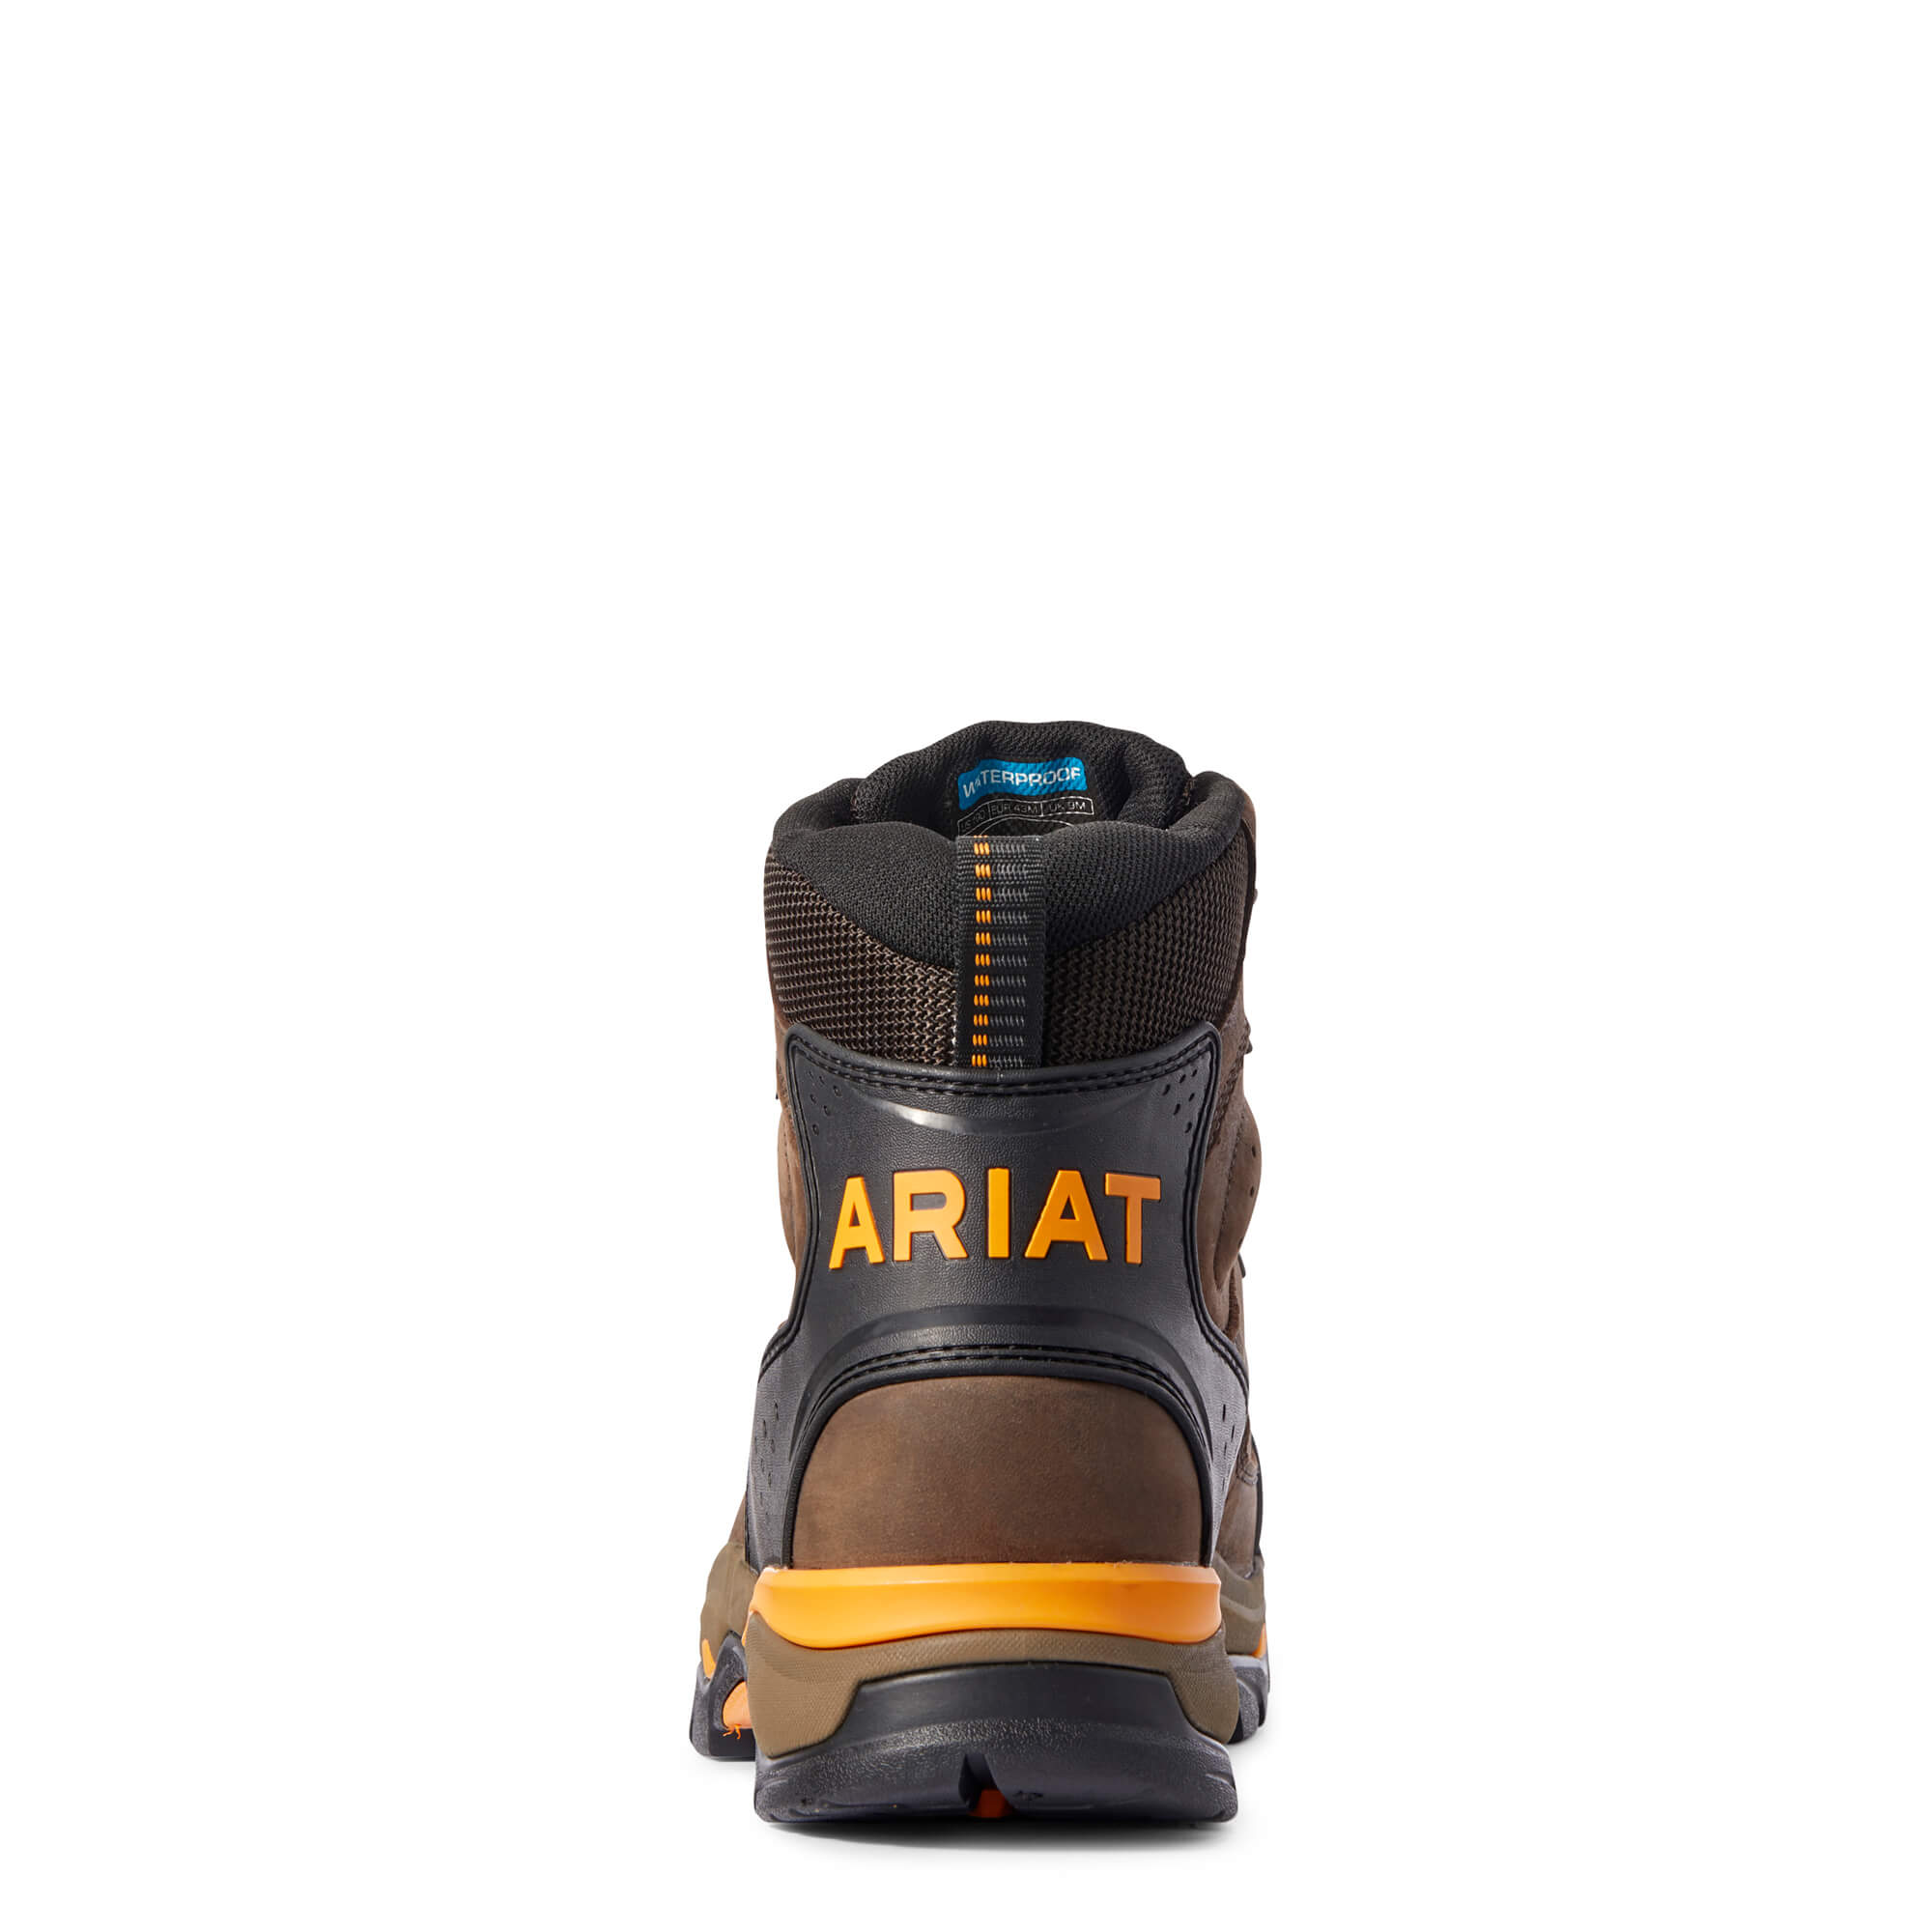 Ariat Endeavor 6" Waterproof Work Boot